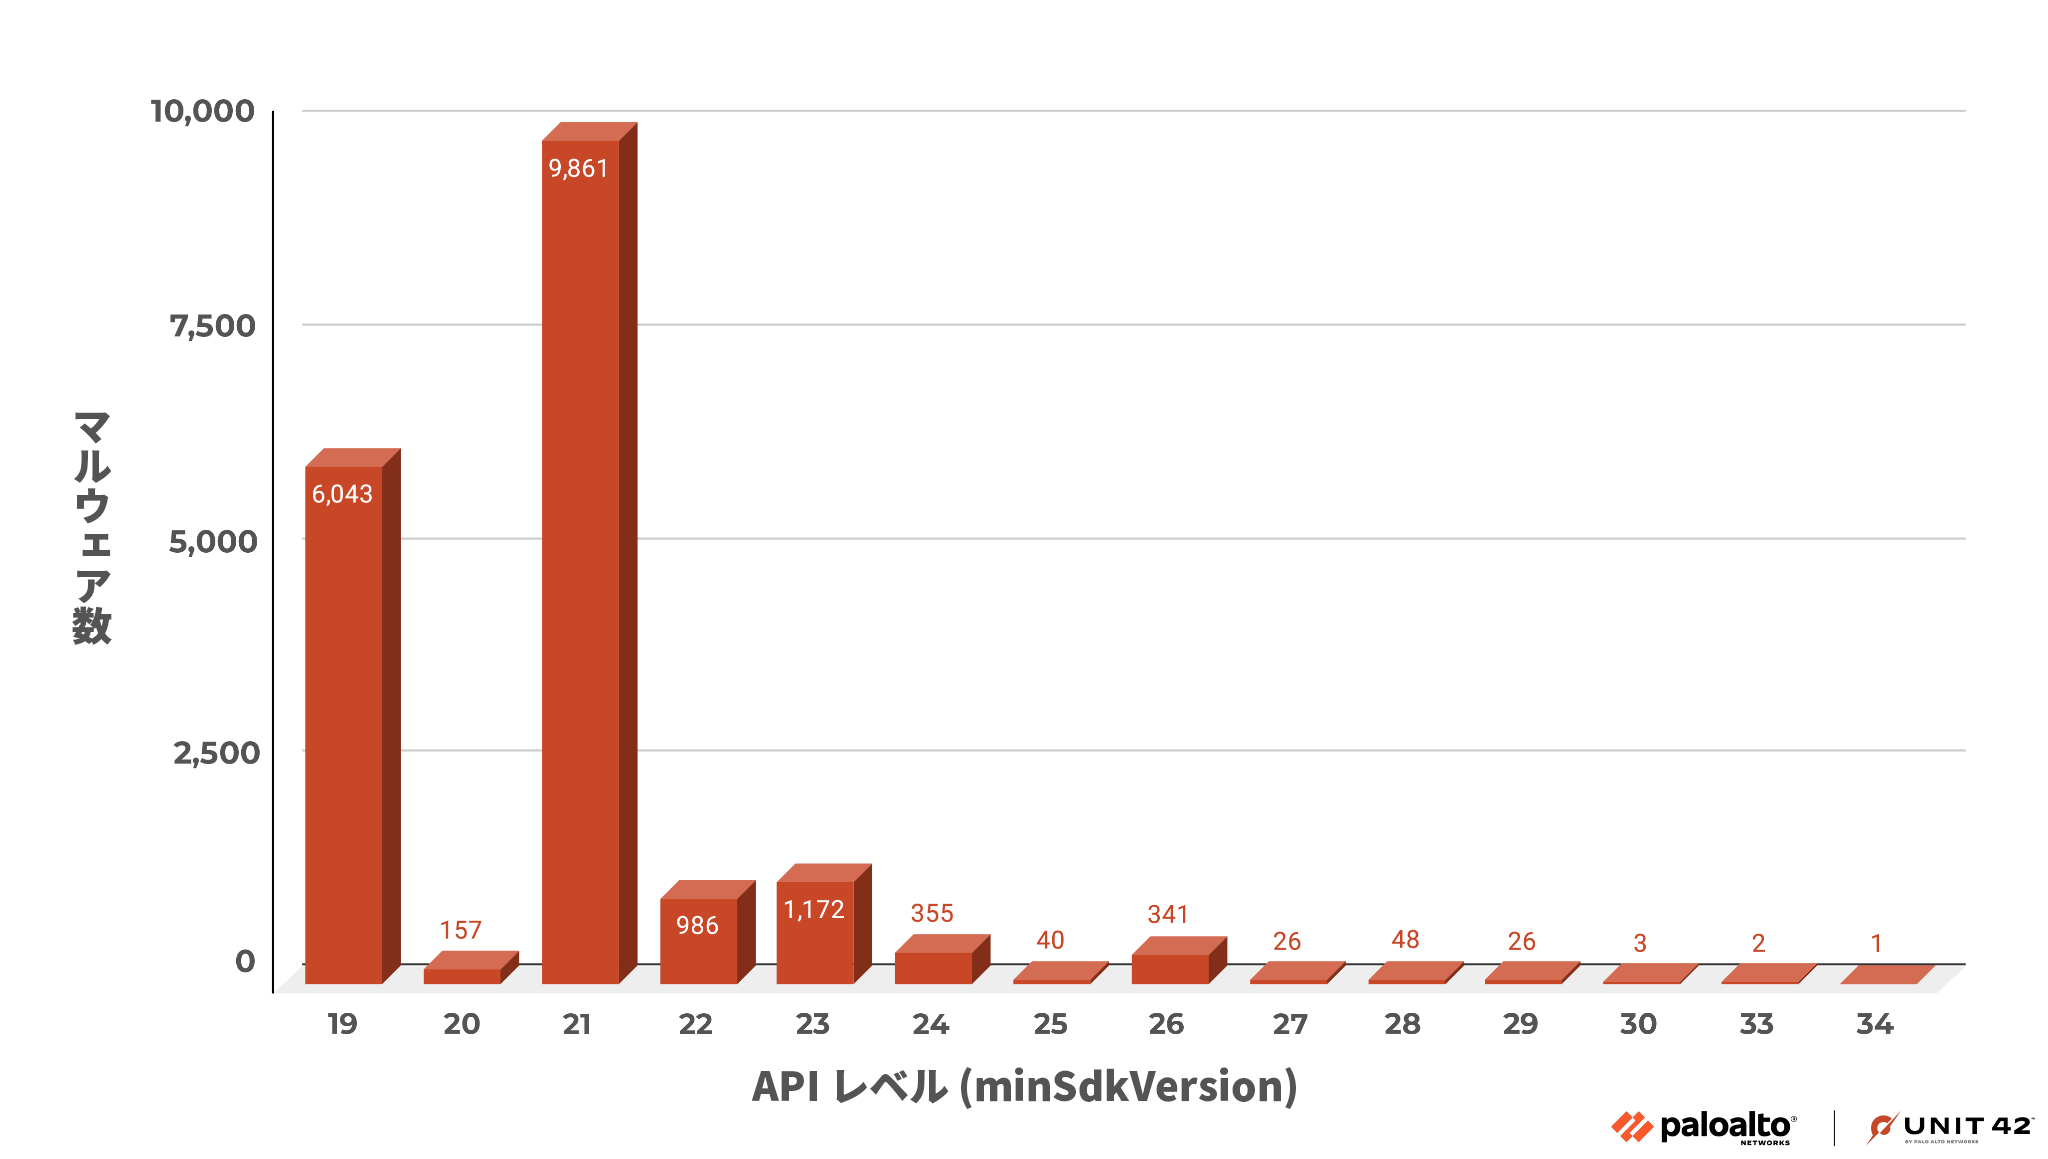 画像 5 は弊社社内テレメトリーから得た、最小 API レベルと各レベルにおける APK マルウェア サンプル数を表したグラフです。最多は API レベル 21 でおよそ 10,000 個です。2 番目に多いのは API レベル 19 の 6,043 個です。3 番目に多いのは API レベル 23 で、1,172 個と大幅に減少しています。